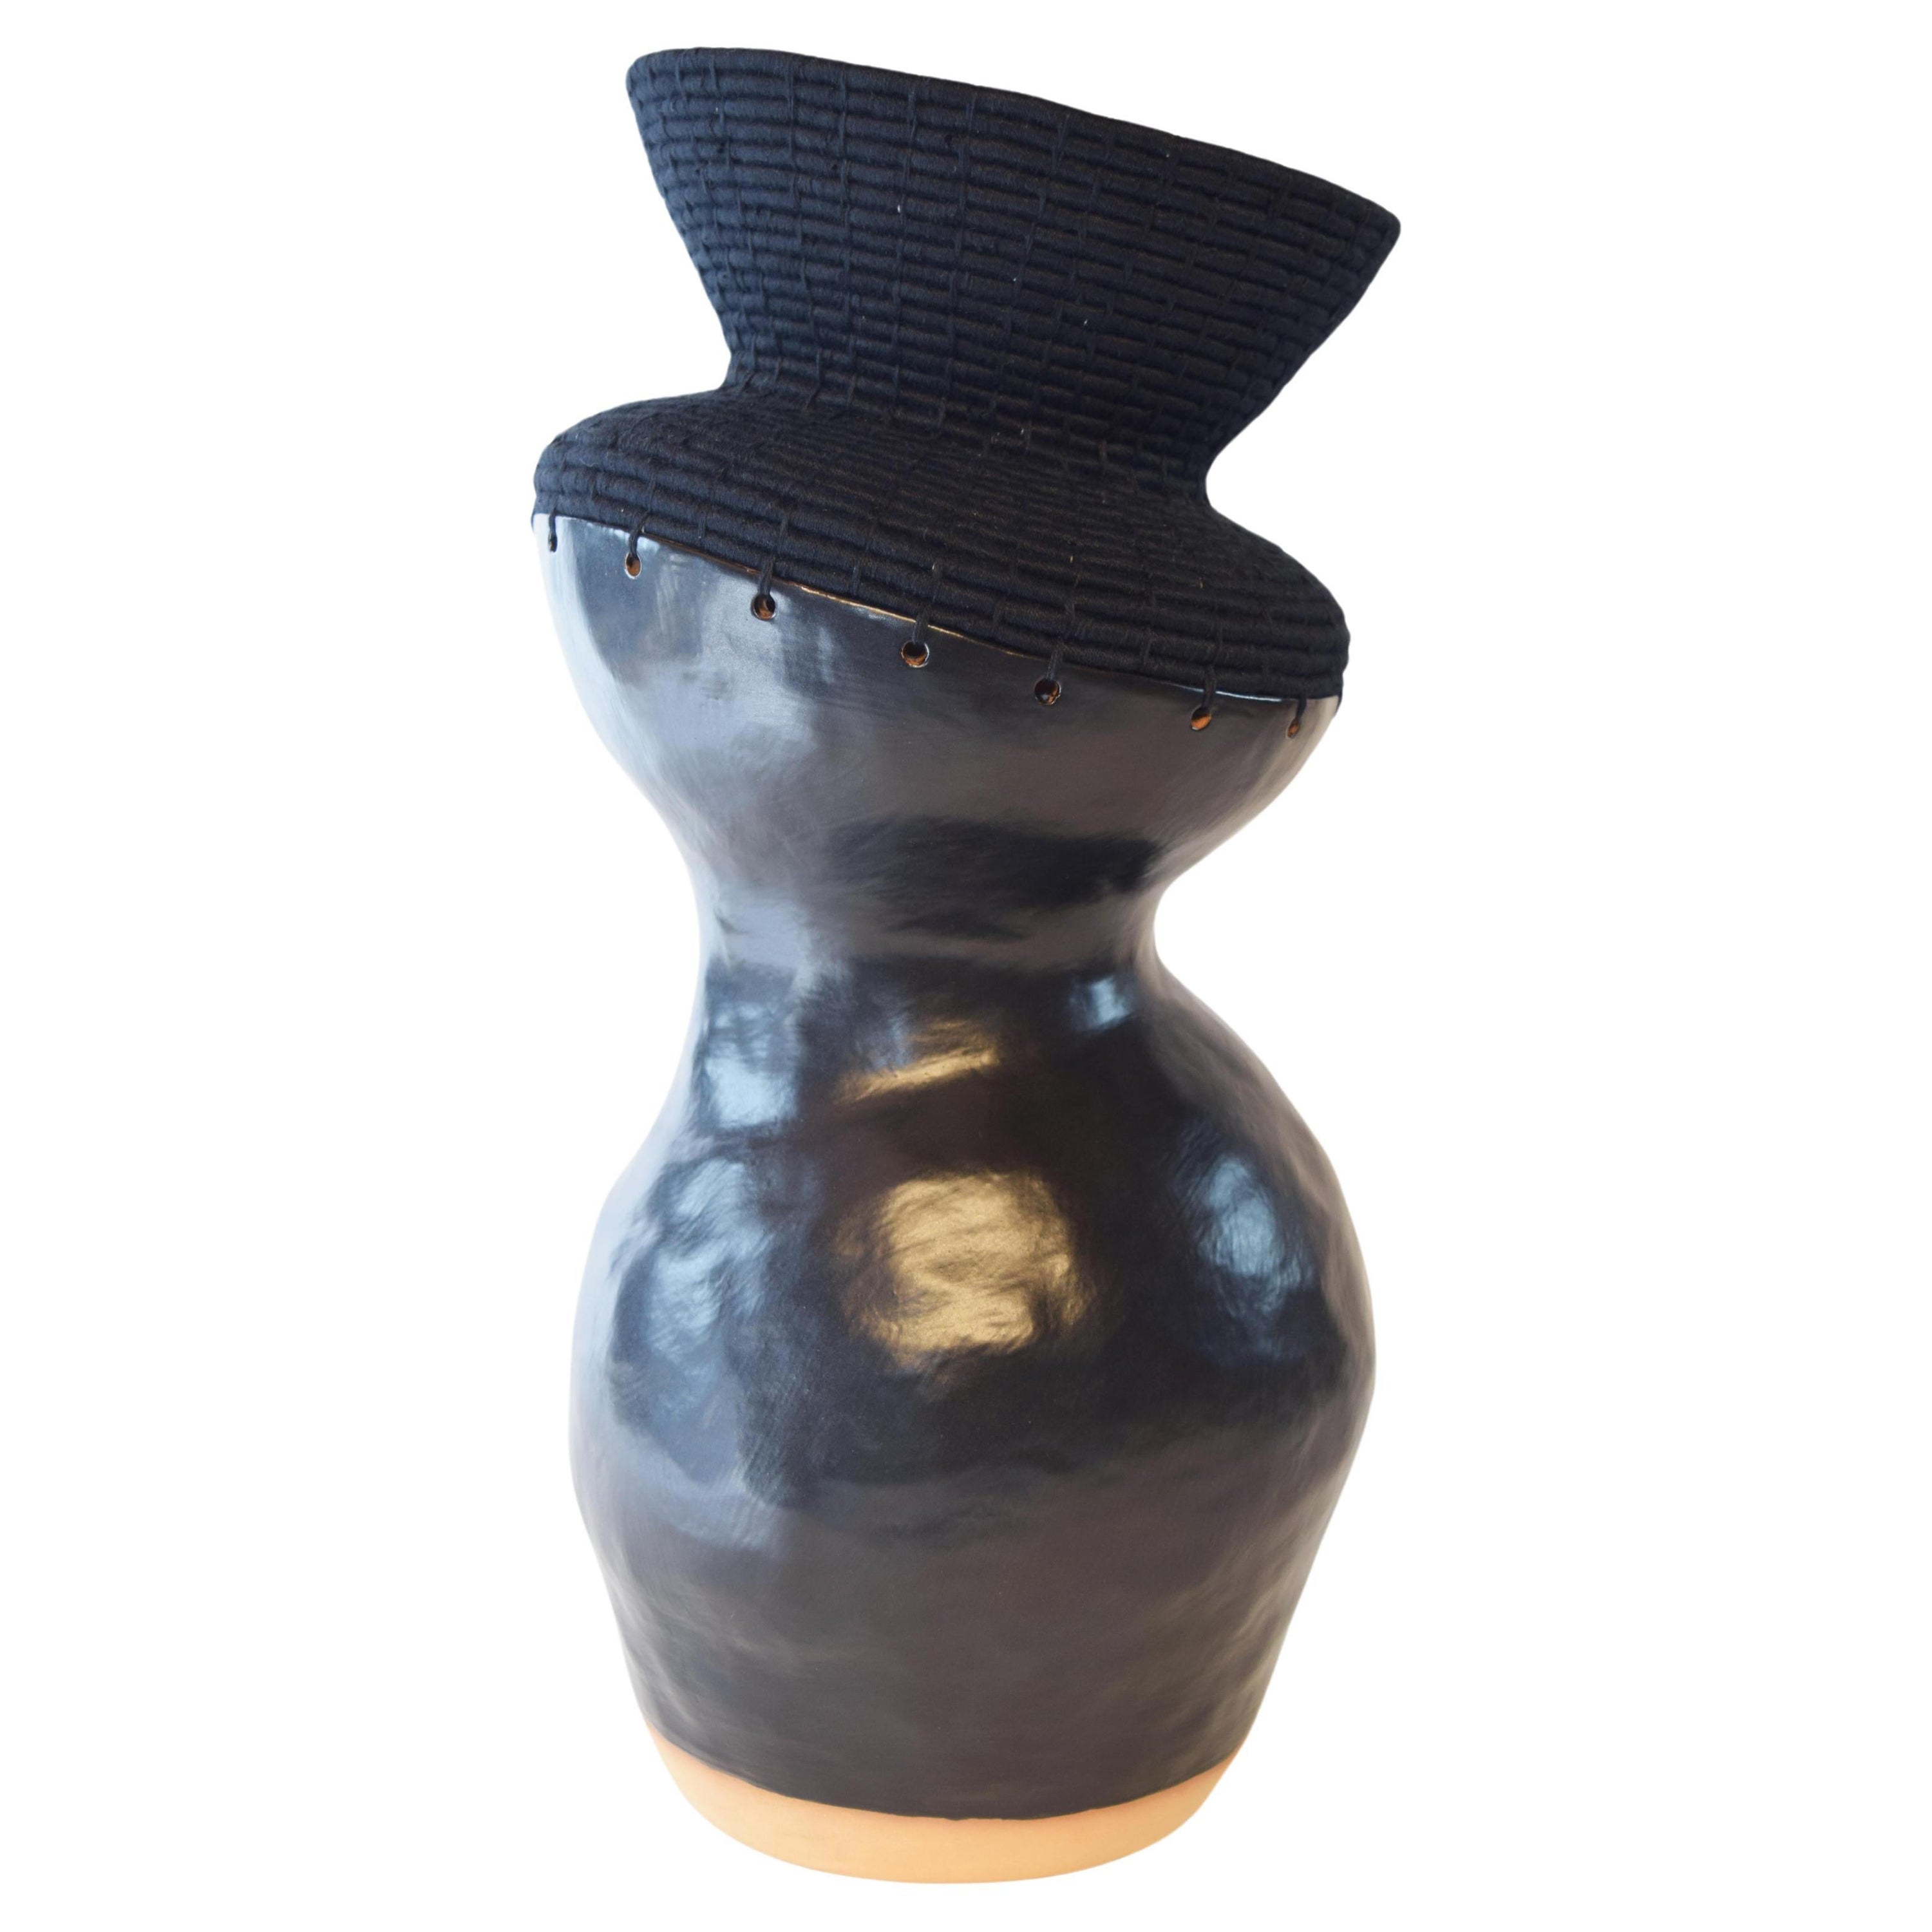 Vase unique en céramique et fibre tissée #761, glaçure noire satinée, coton noir